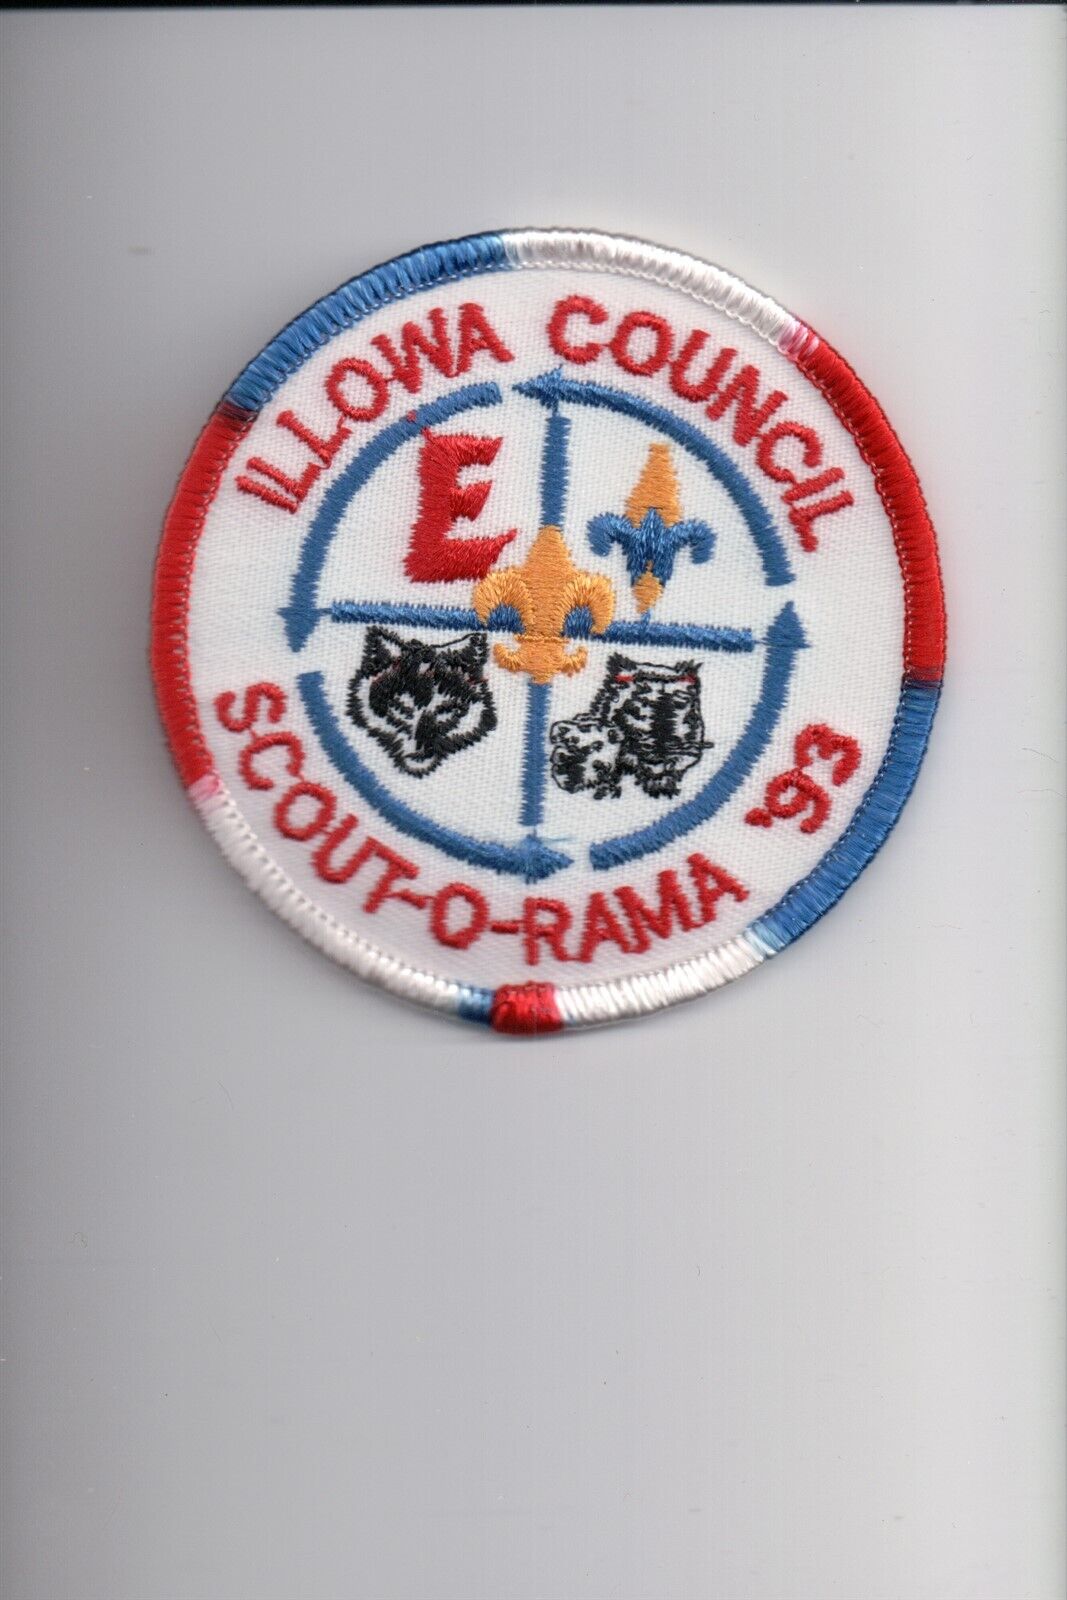 1993 Illowa Council Scout-O-Rama patch